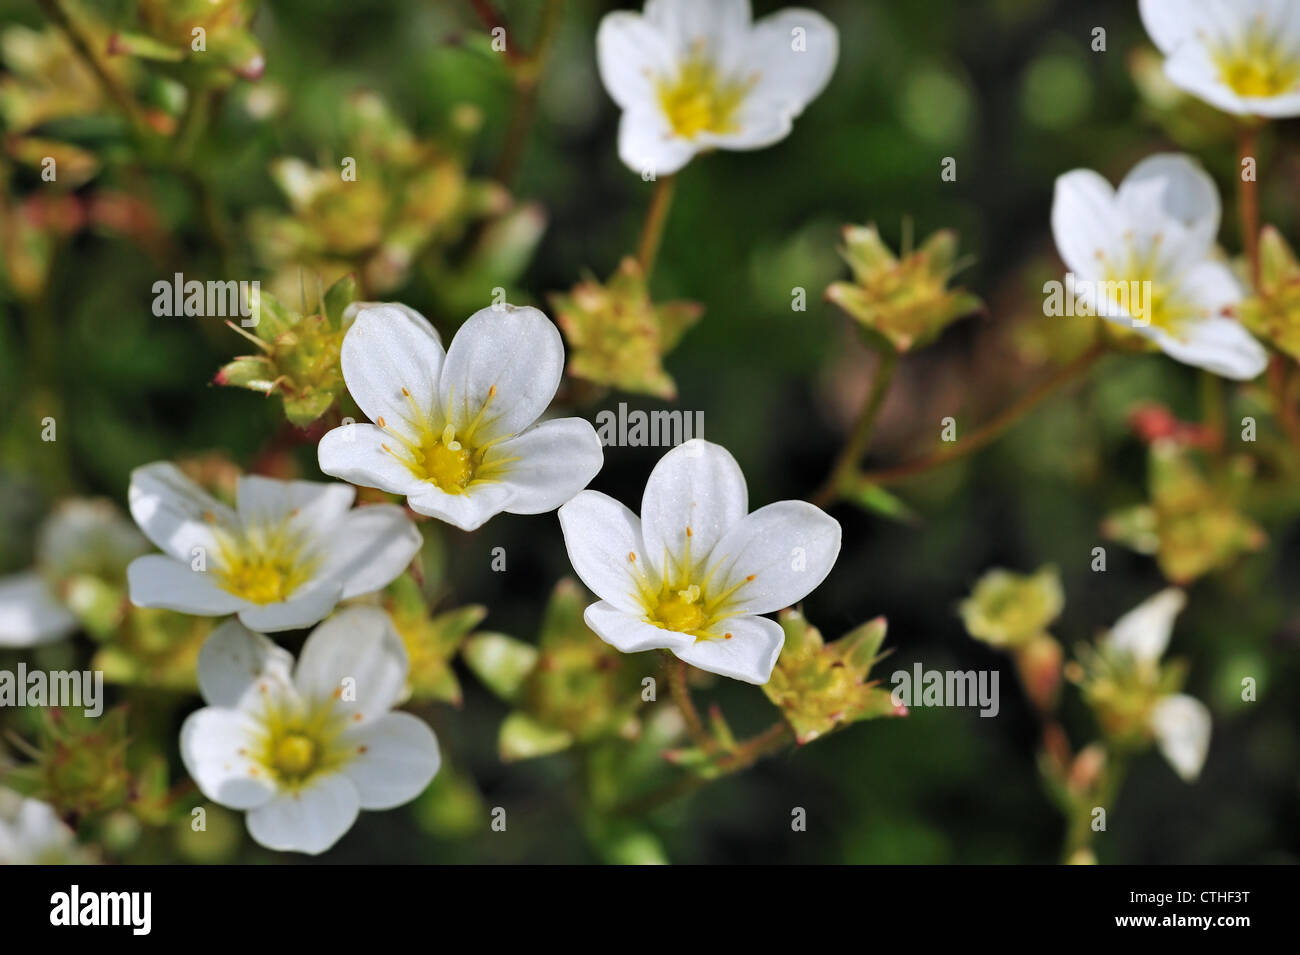 Mossy saxifrage (Saxifraga hypnoides) in flower, Europe Stock Photo